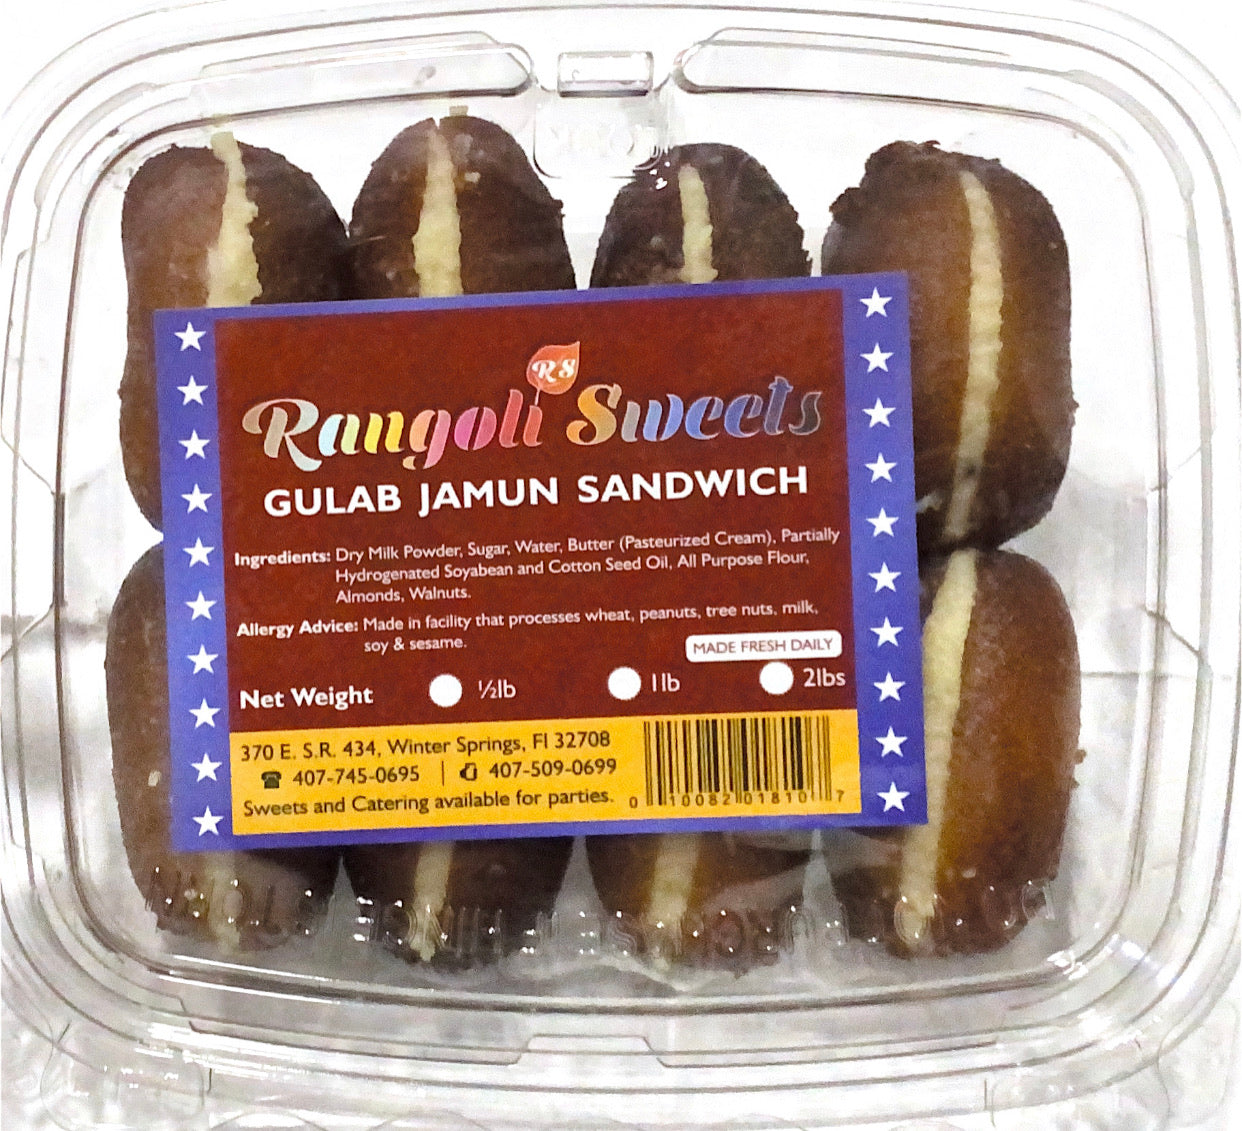 Gulab Jamun Sandwich